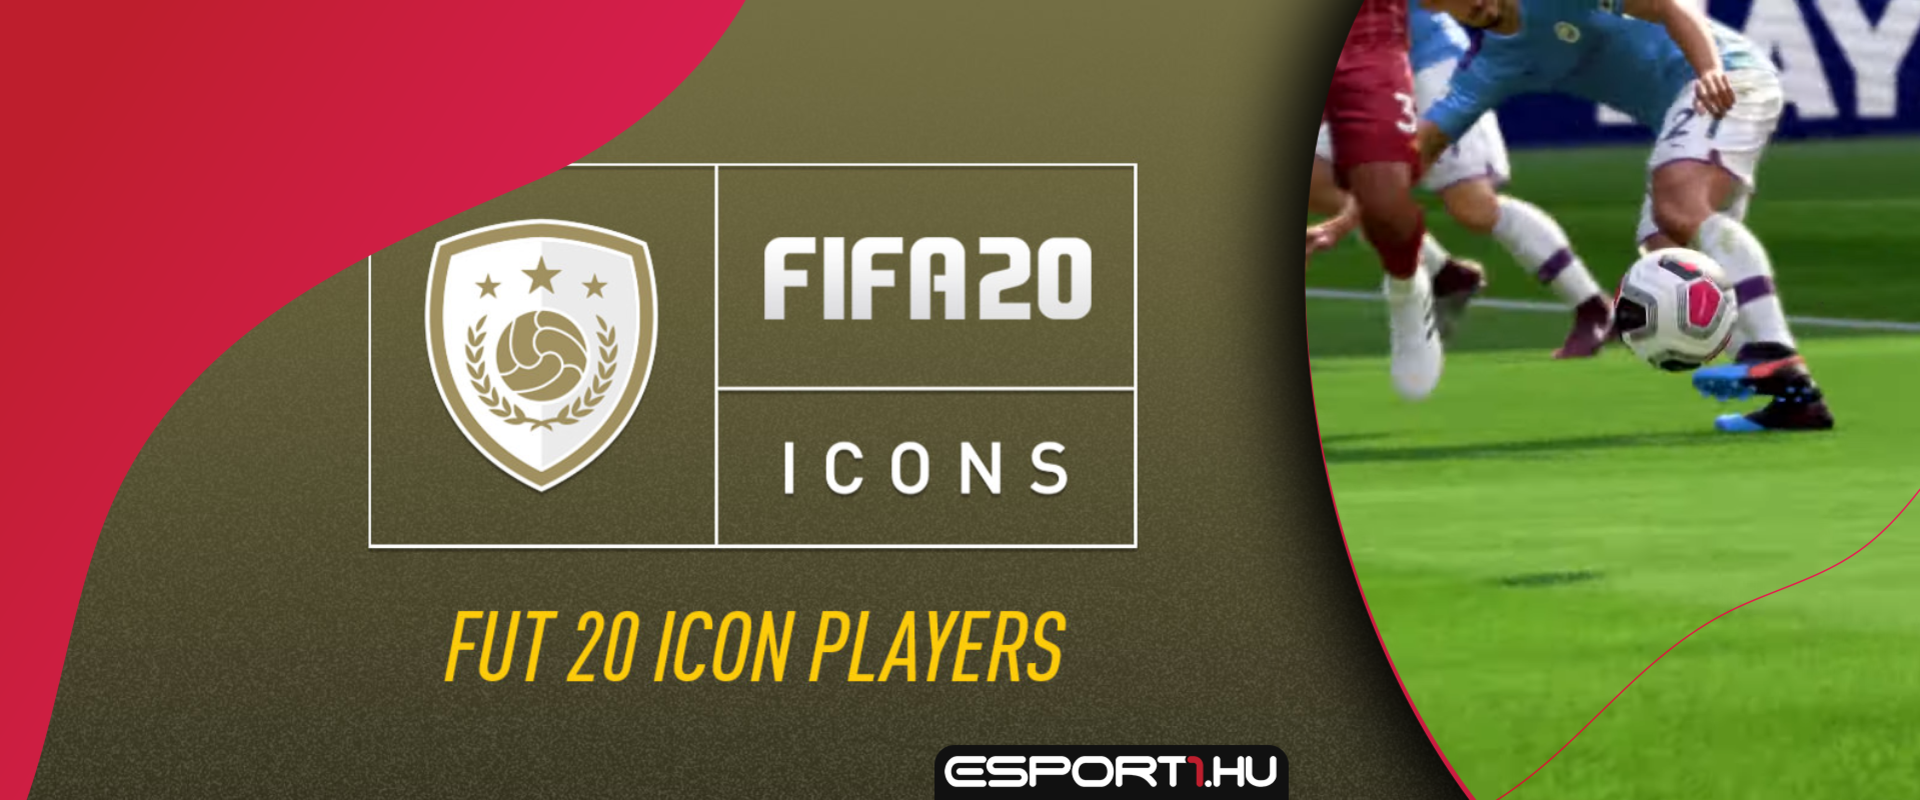 FIFA20: Két tucat játékos is Ikon jelölt lehet az idei részben!